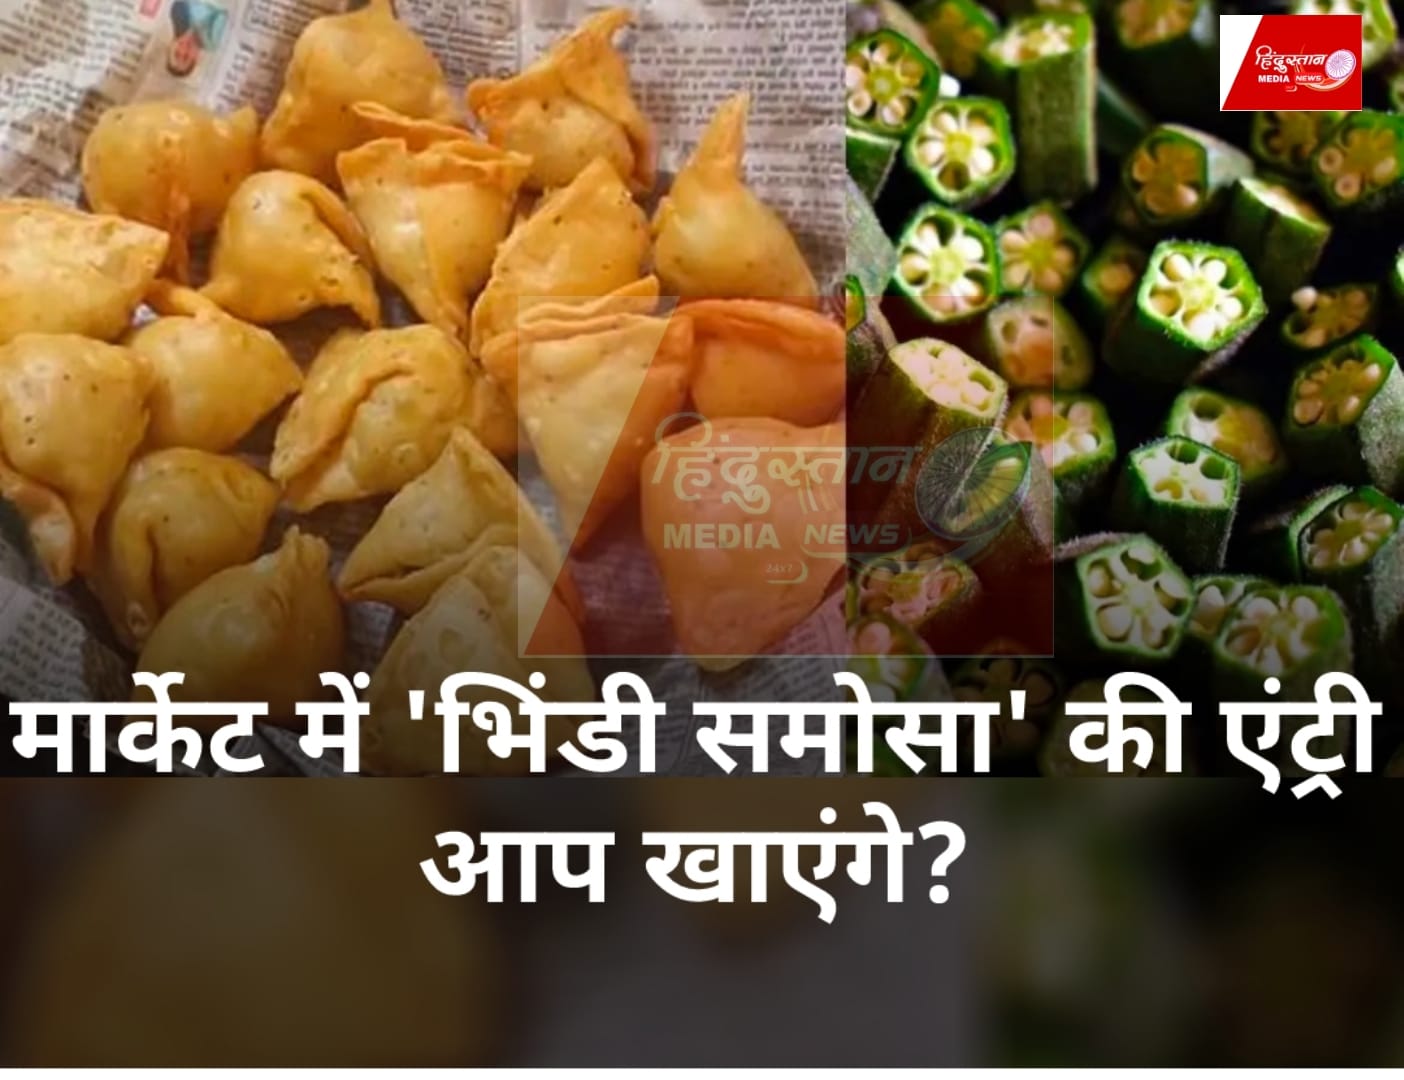 Bhindi Samosa: दिल्ली के चांदनी चौक का लजीज भिंडी समोसा खाकर आप भी हो जाएगे हैरान,वीडियो हुआ वायरल